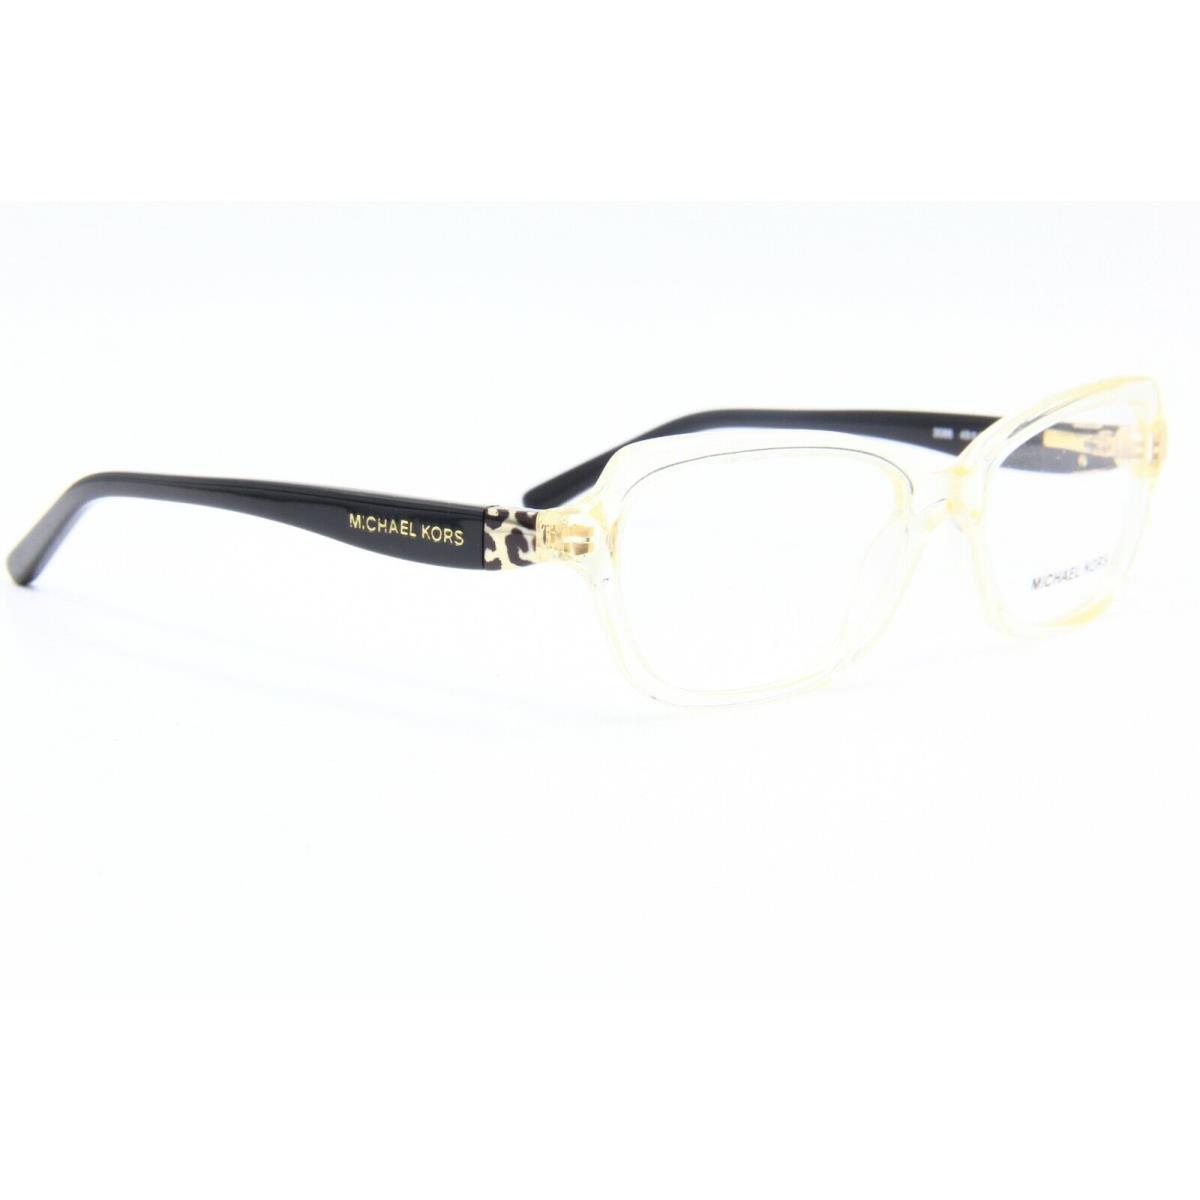 Michael Kors eyeglasses  - Clear Frame 1